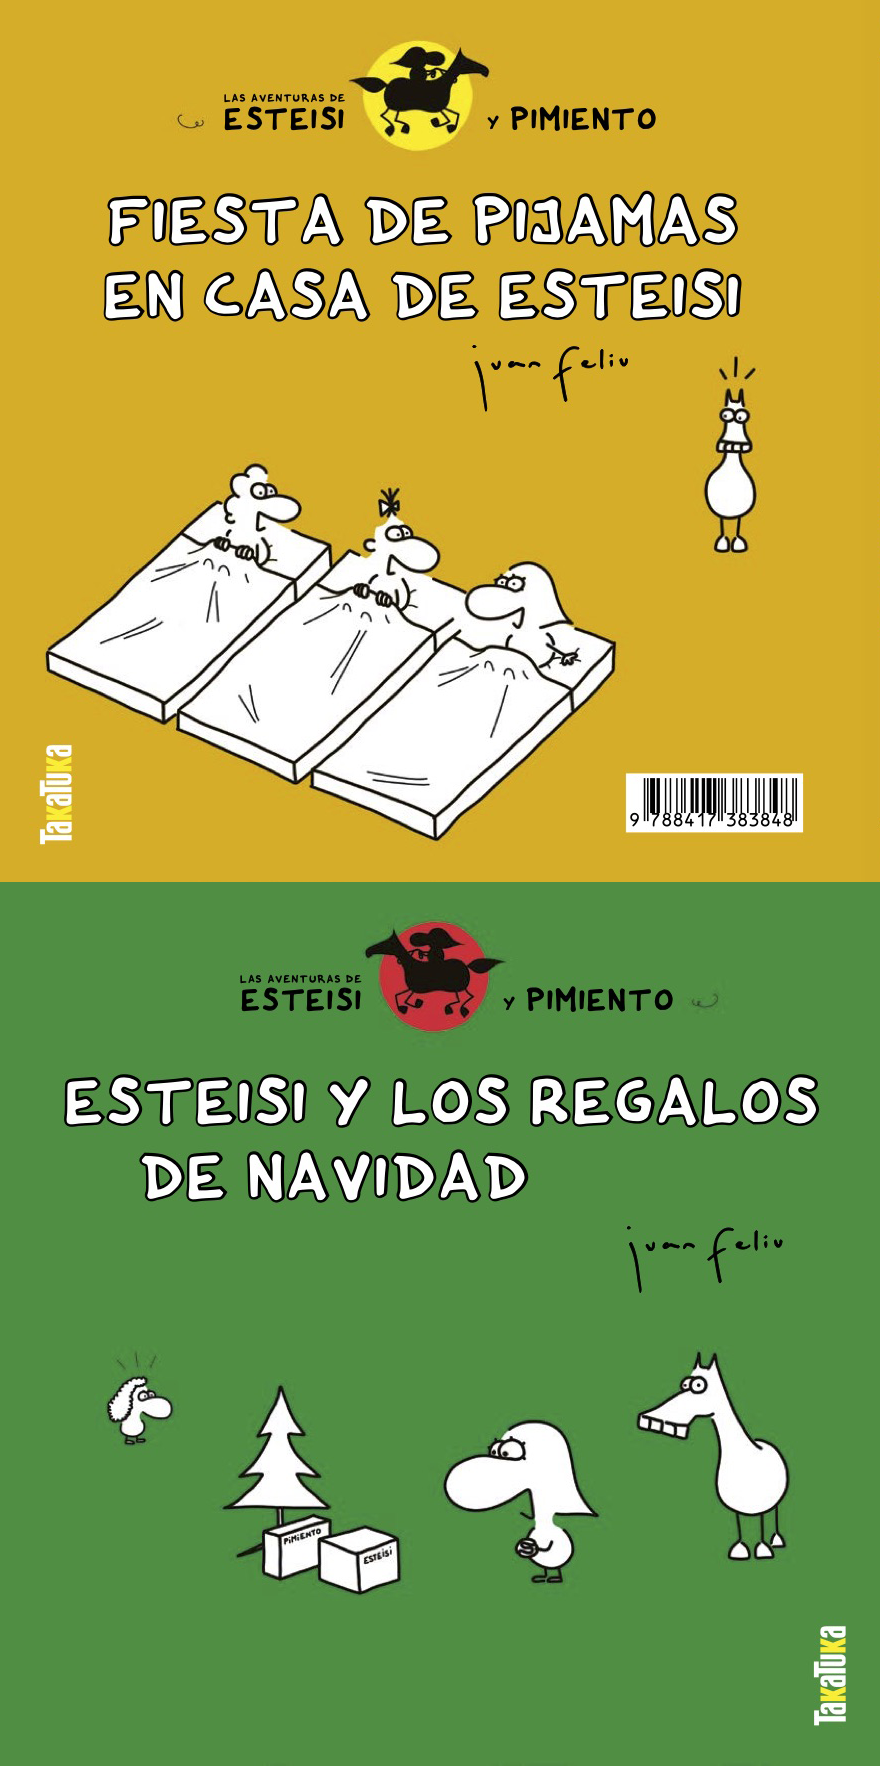 Esteisi y los regalos de Navidad // Fiesta de pijamas en casa de Esteisi - Juan Feliu Sastre